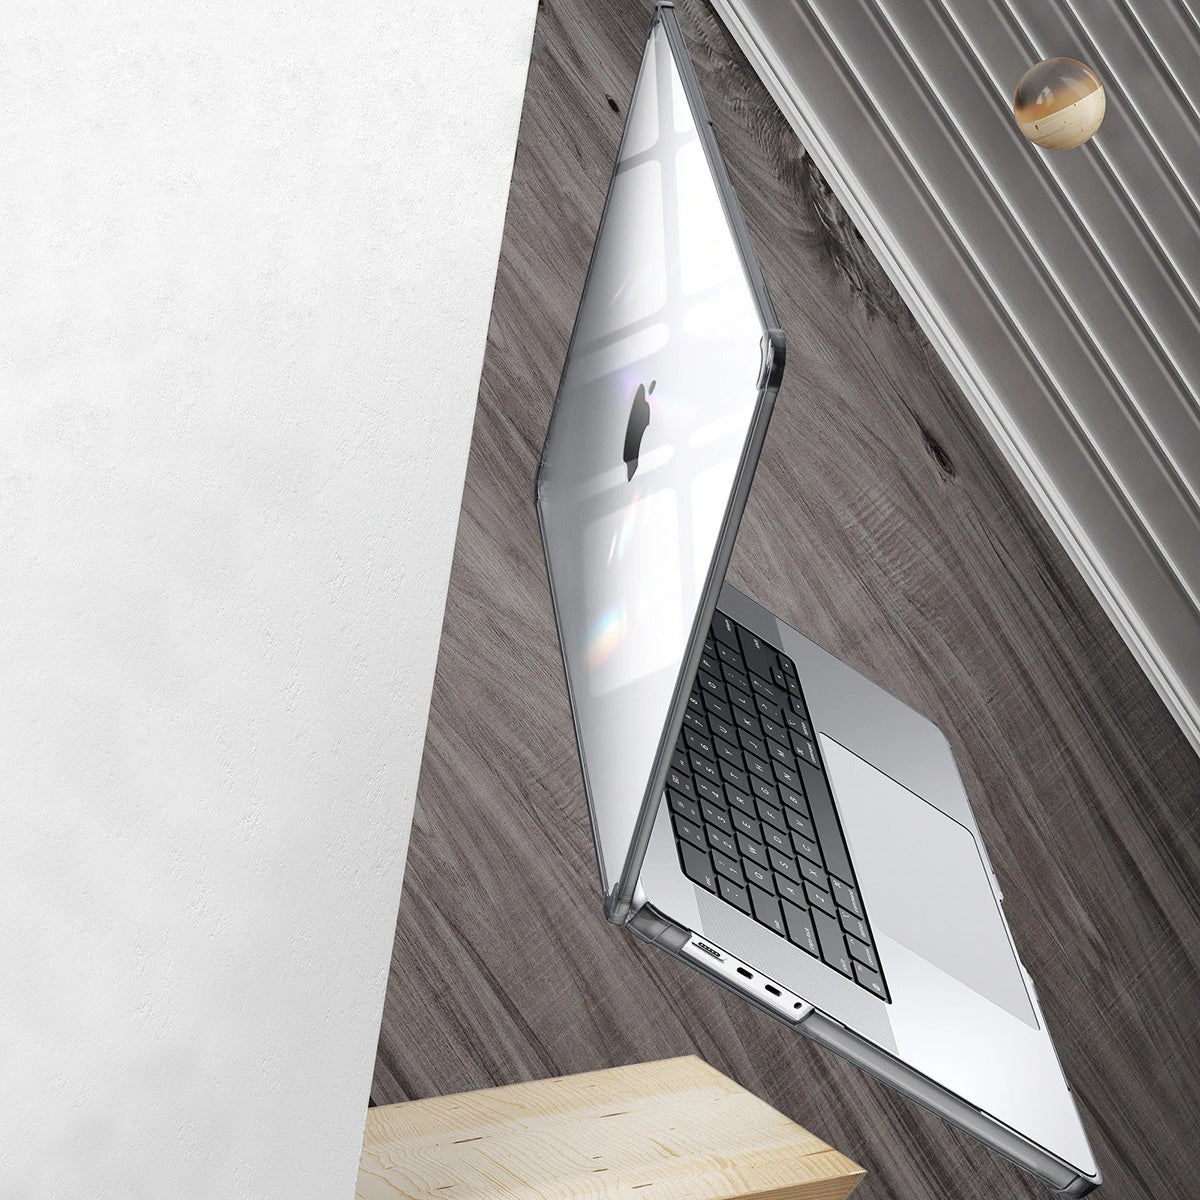 Schutzhülle Supcase UB Clear für MacBook Pro 14 2021-2023, Transparent/Rauchfarben